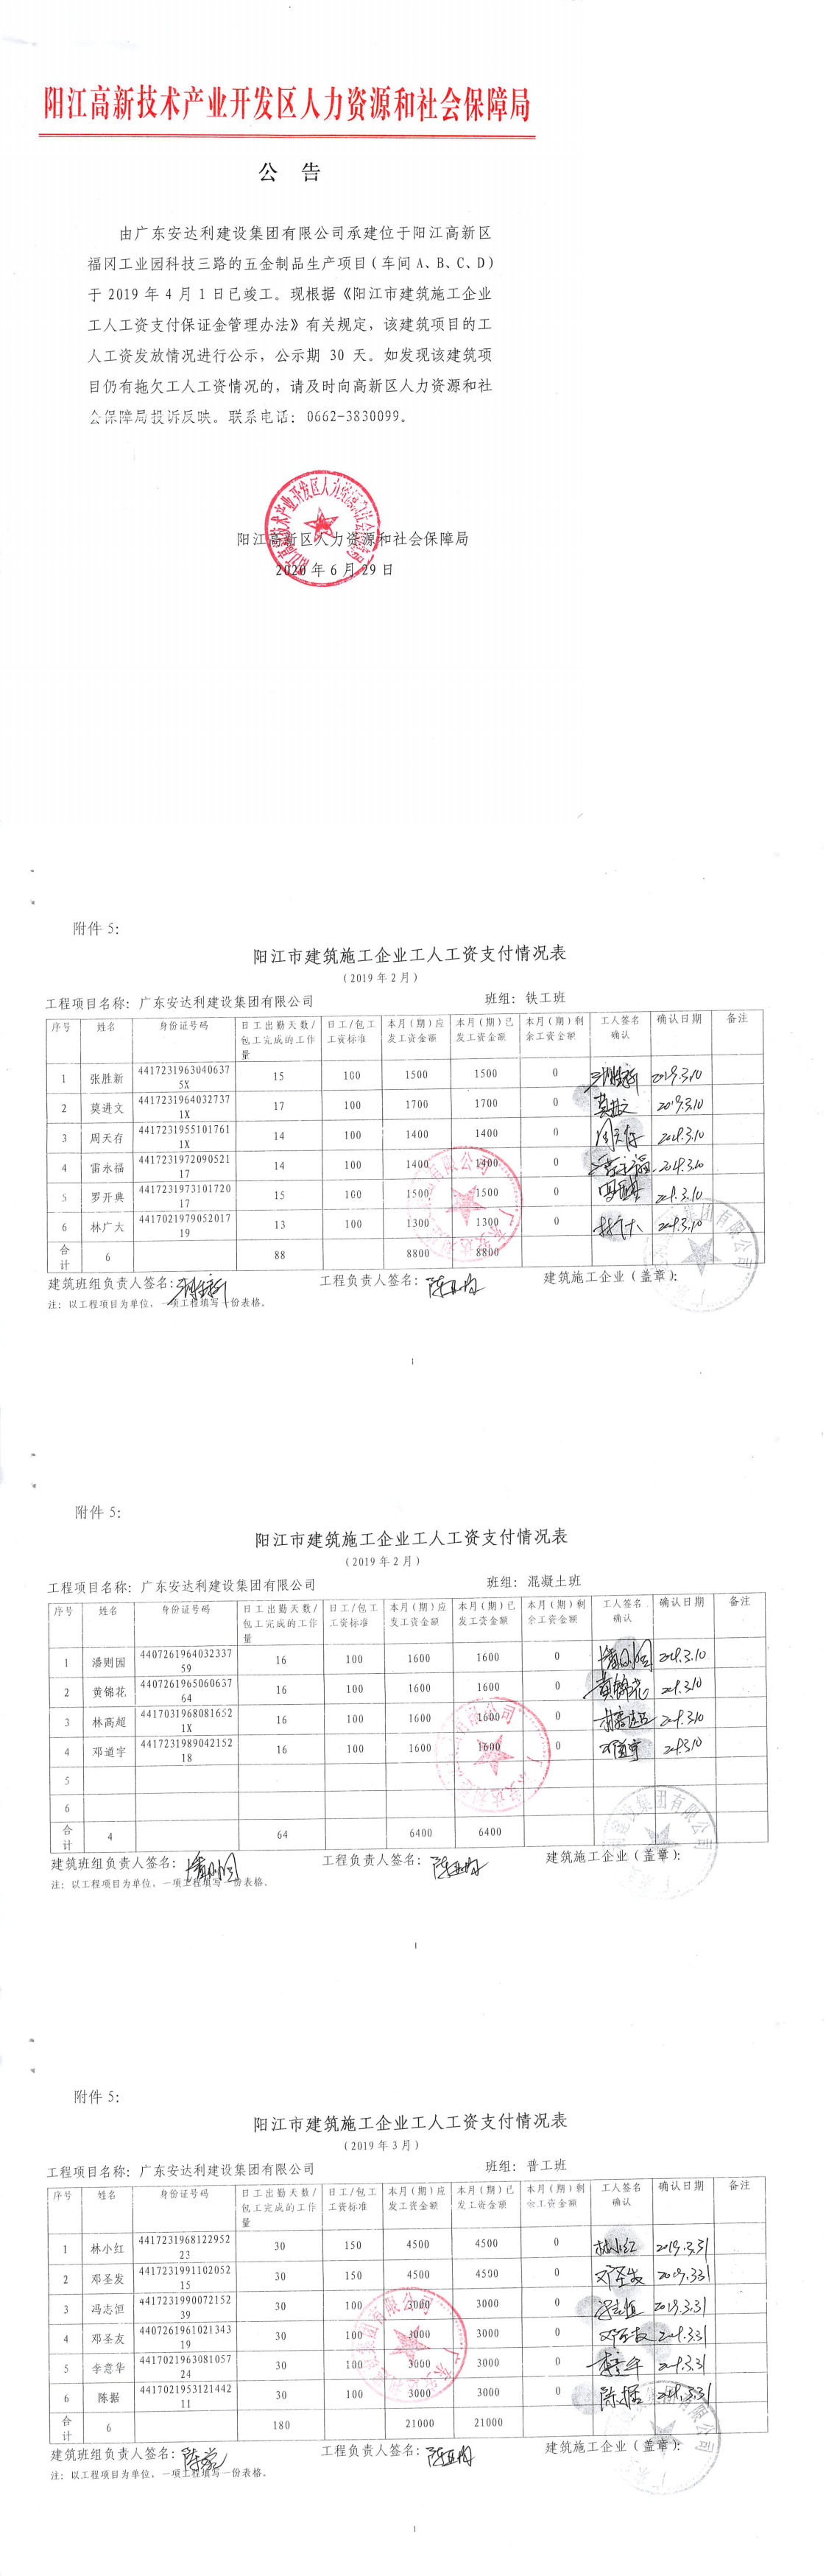 阳江市嘉兴经贸有限公司五金制品生产项目（车间A、B、C、D）工程保证金返还公告_0.png